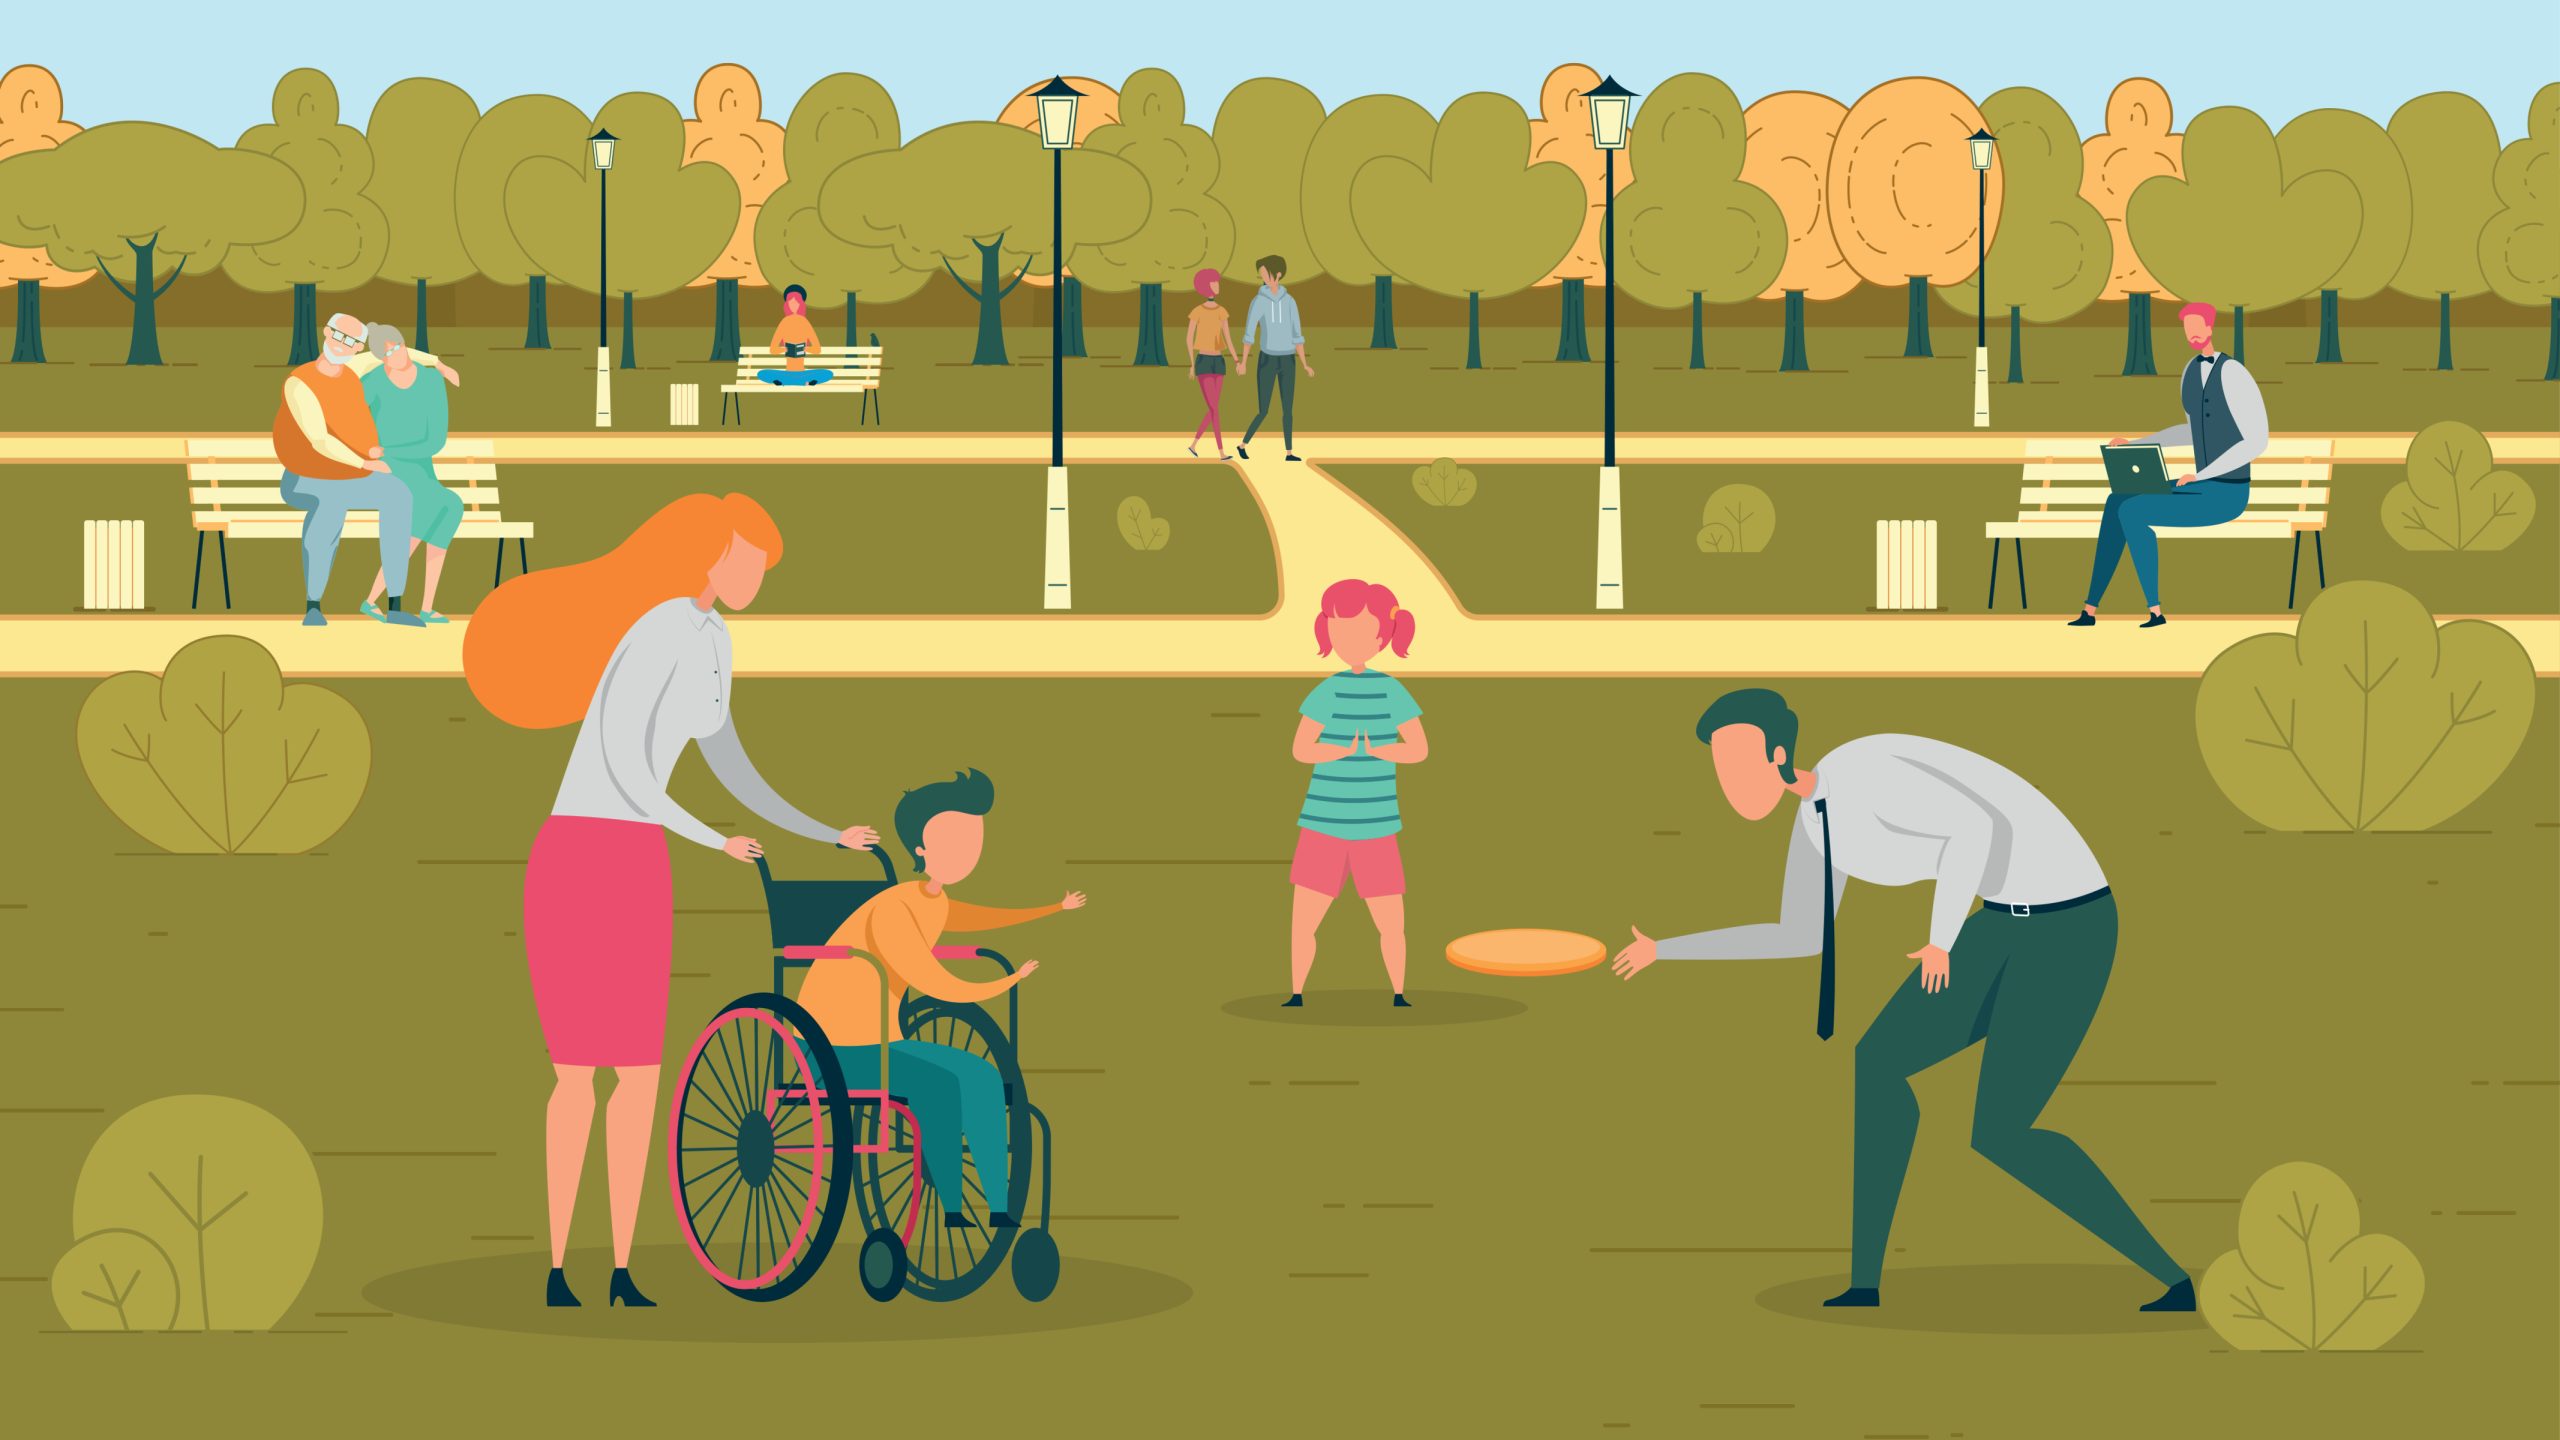 Cartoon of child in wheelchair playing in a park ציור של ילד בכסא גלגלים משחק בפארק ציבורי